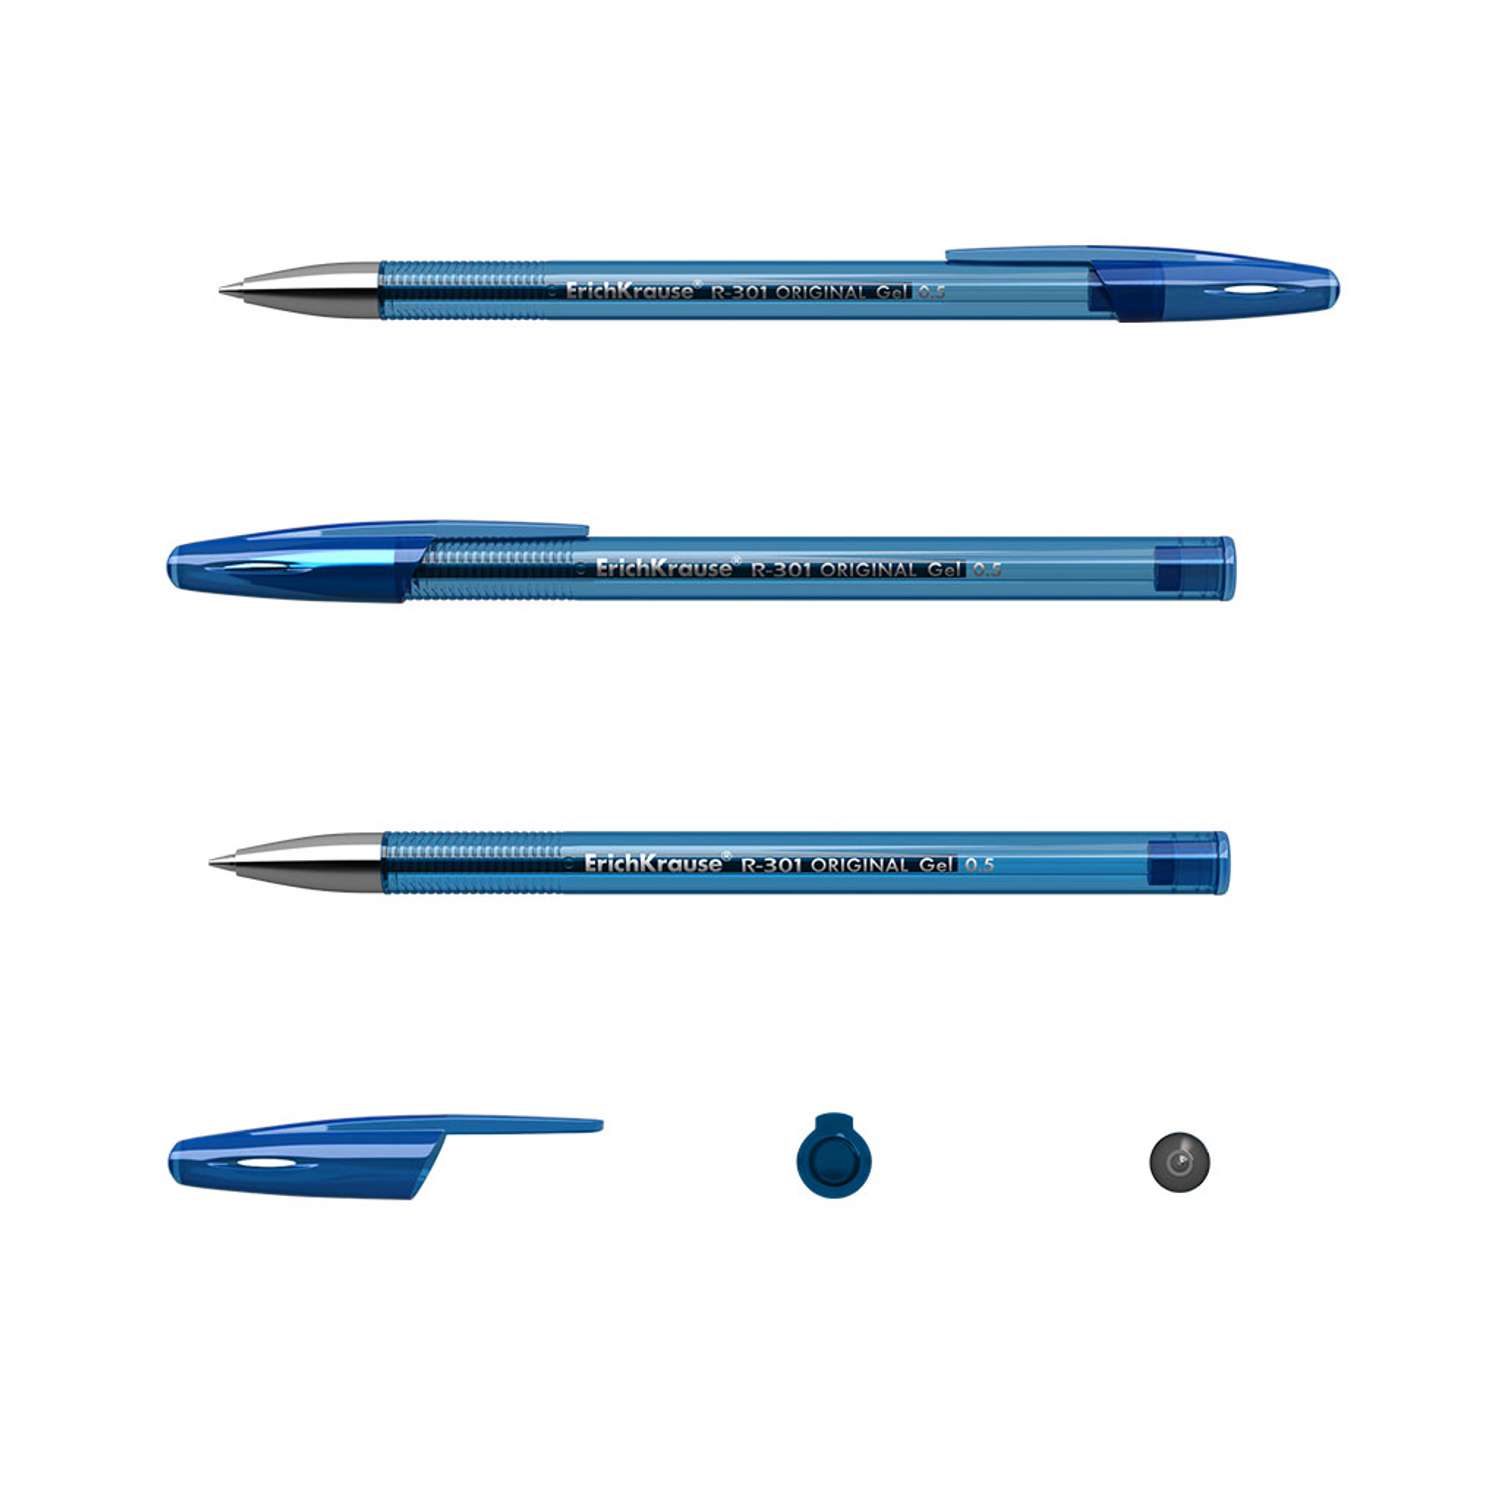 Ручка гелевая ErichKrause R 301 Original Gel Stick синий 4 шт - фото 2